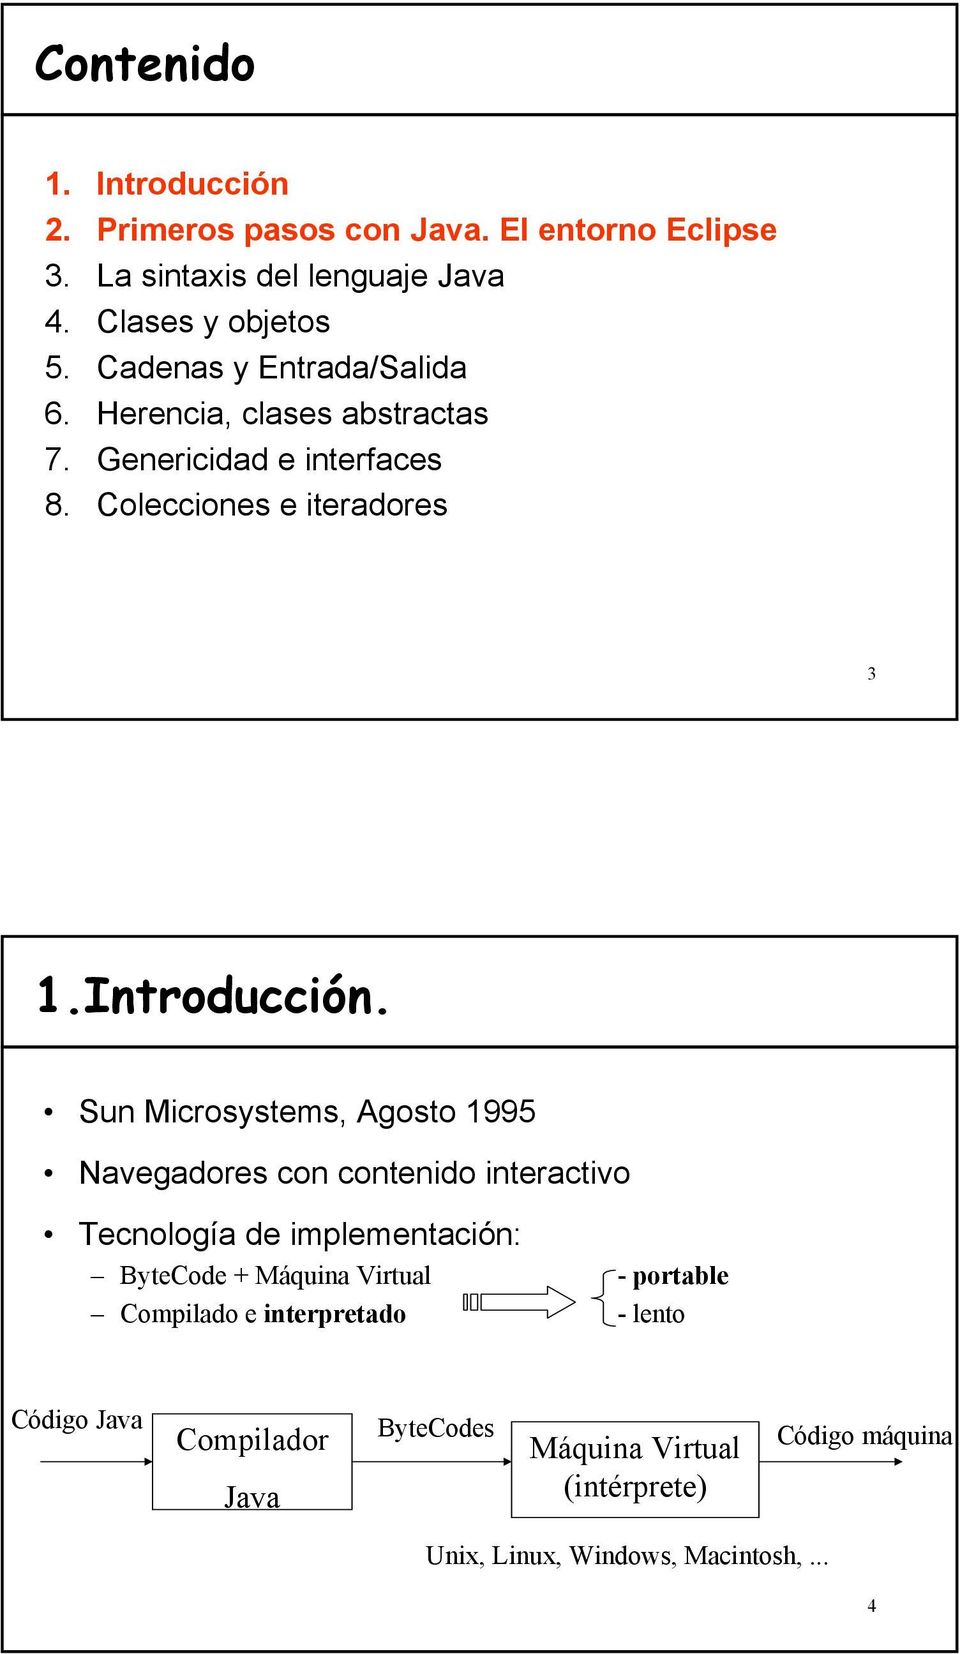 Sun Microsystems, Agosto 1995 Navegadores con contenido interactivo Tecnología de implementación: ByteCode + Máquina Virtual - portable